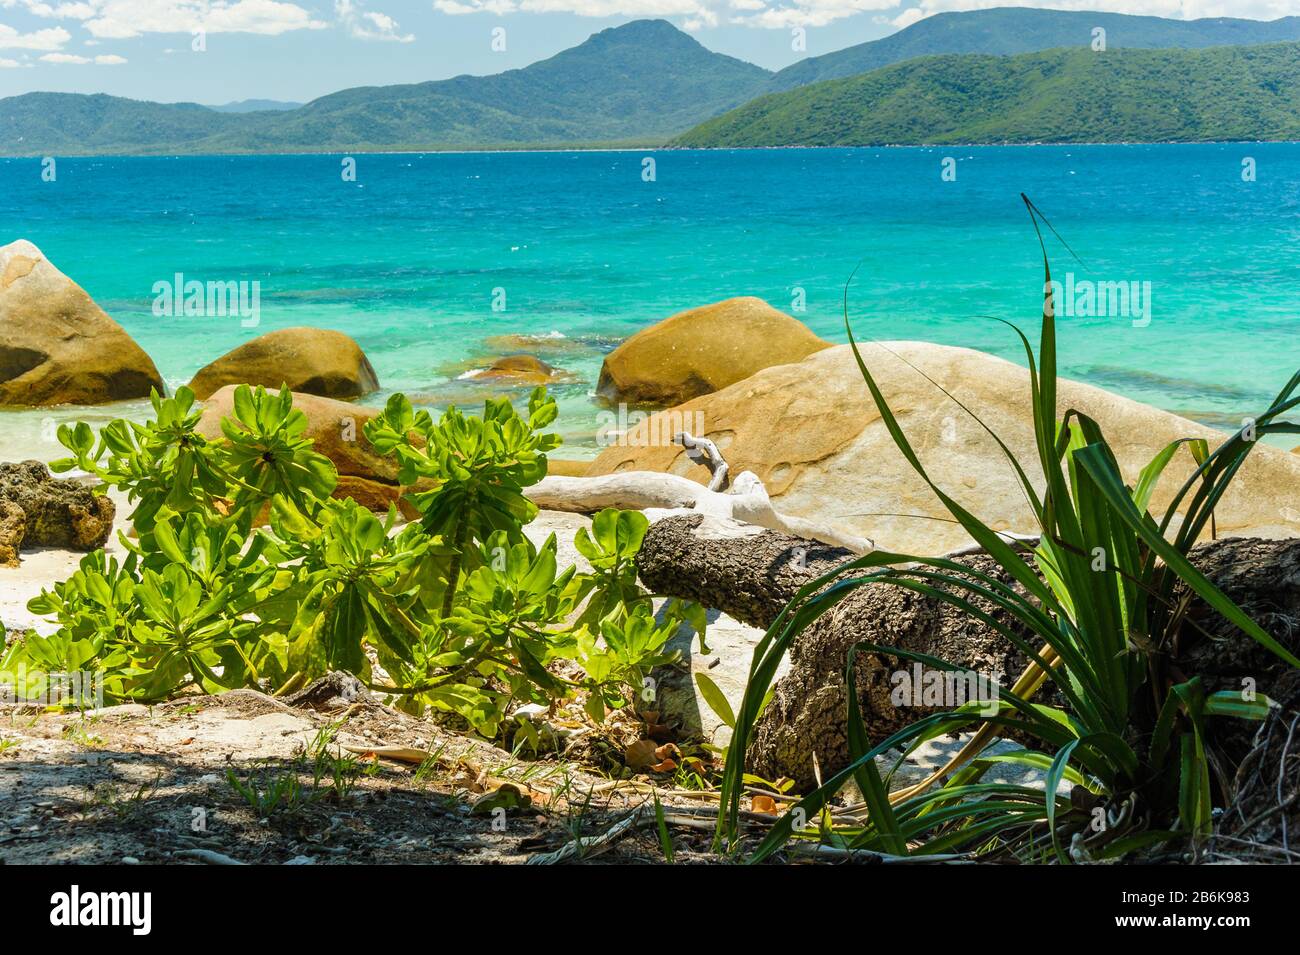 Vista attraverso le acque cristalline e blu-verdi dell'Oceano Pacifico dalla vegetazione costiera di Nudey Beach inframmezzata da massi rotondi da spiaggia. Foto Stock